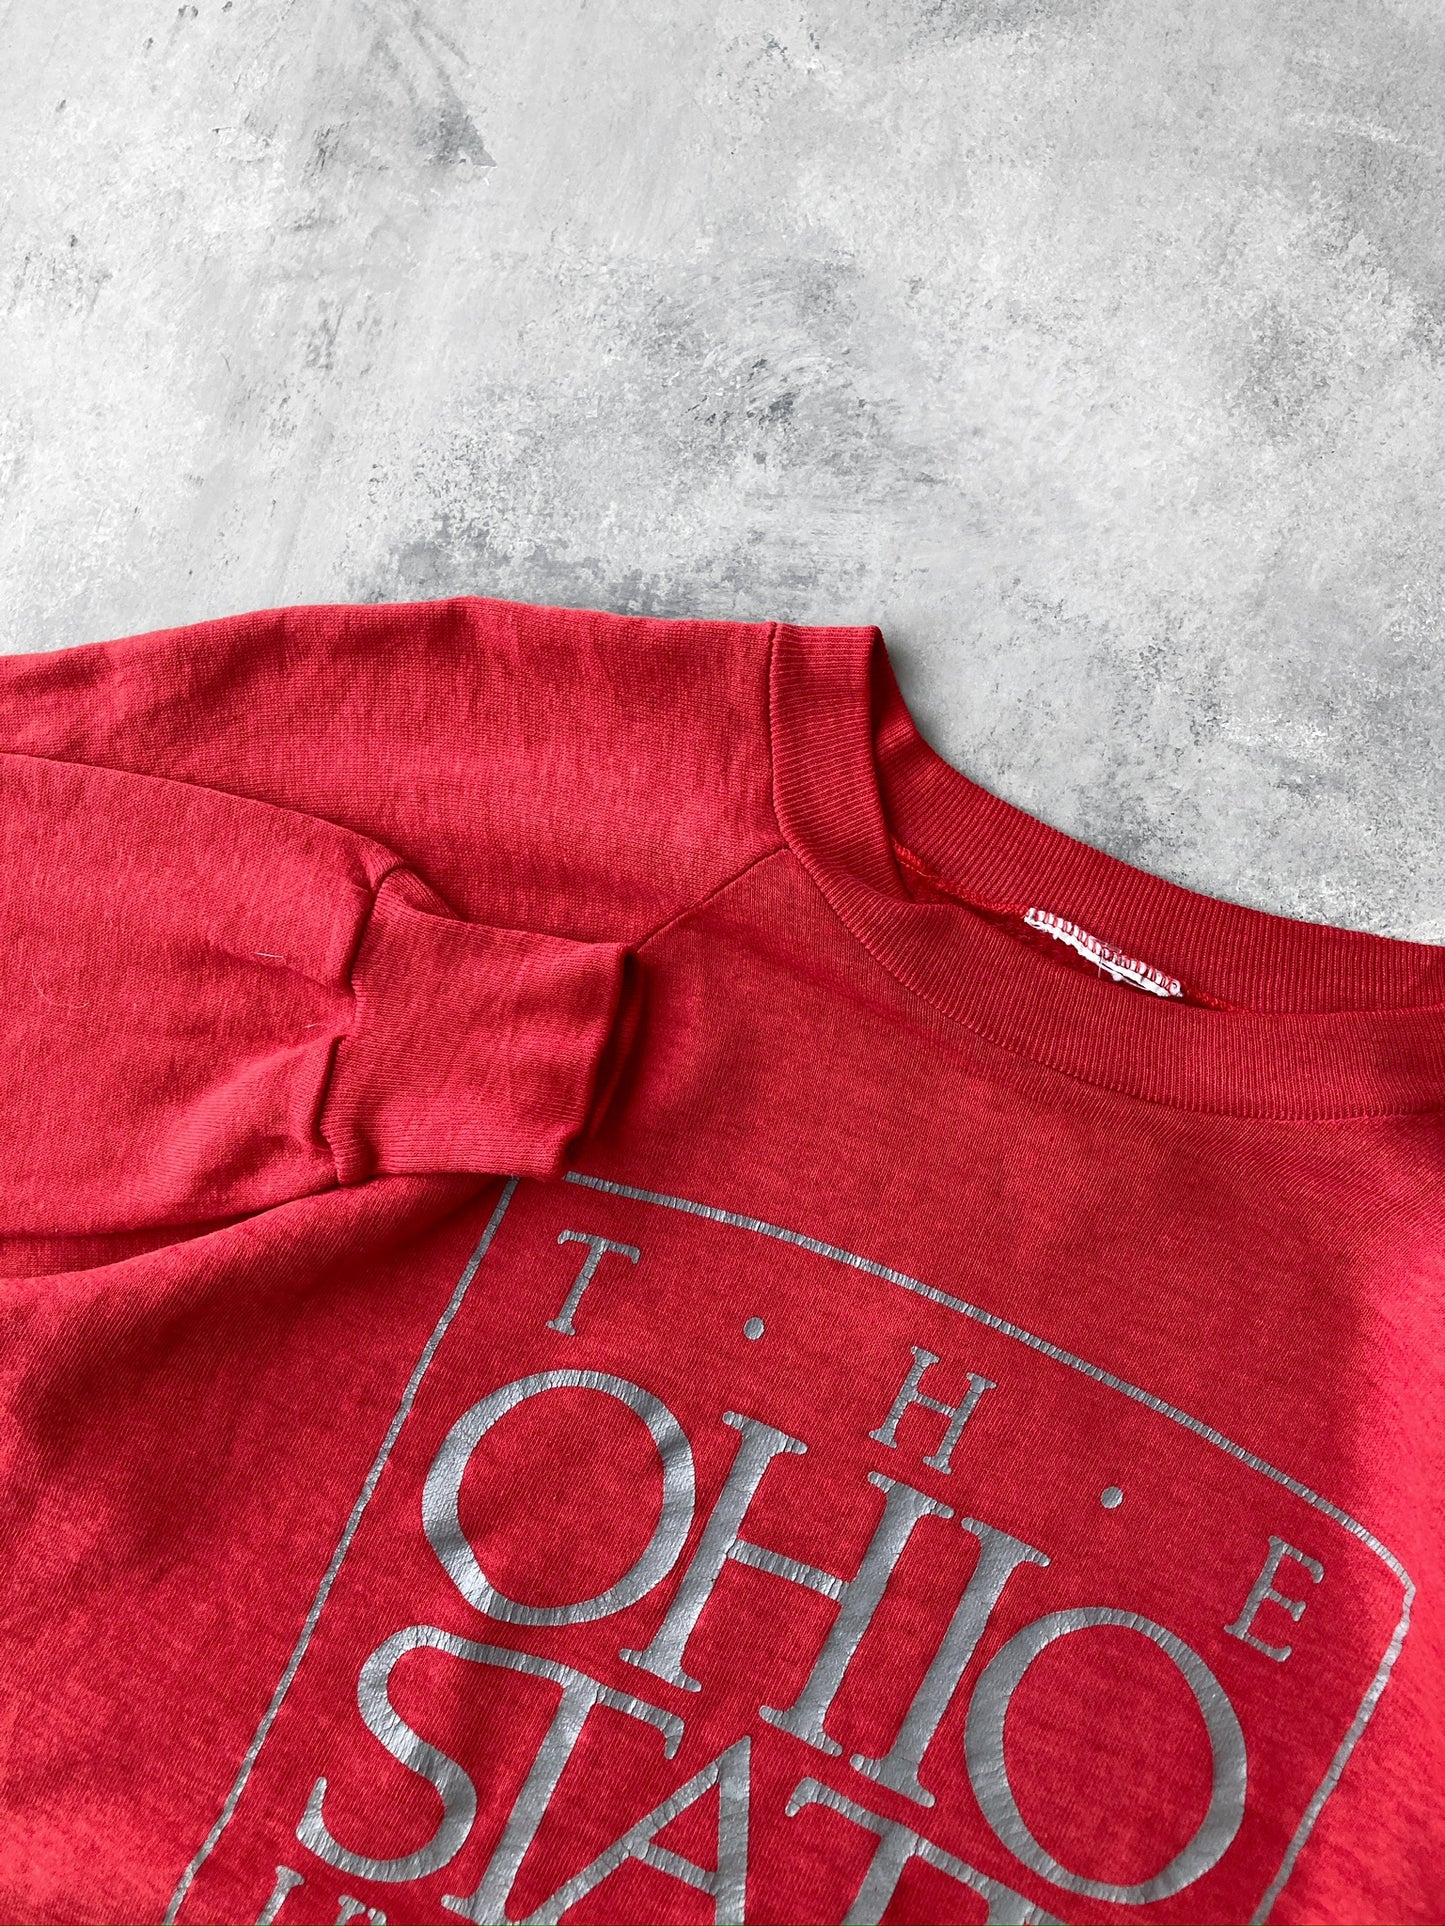 The Ohio State University Sweatshirt 80's - Medium